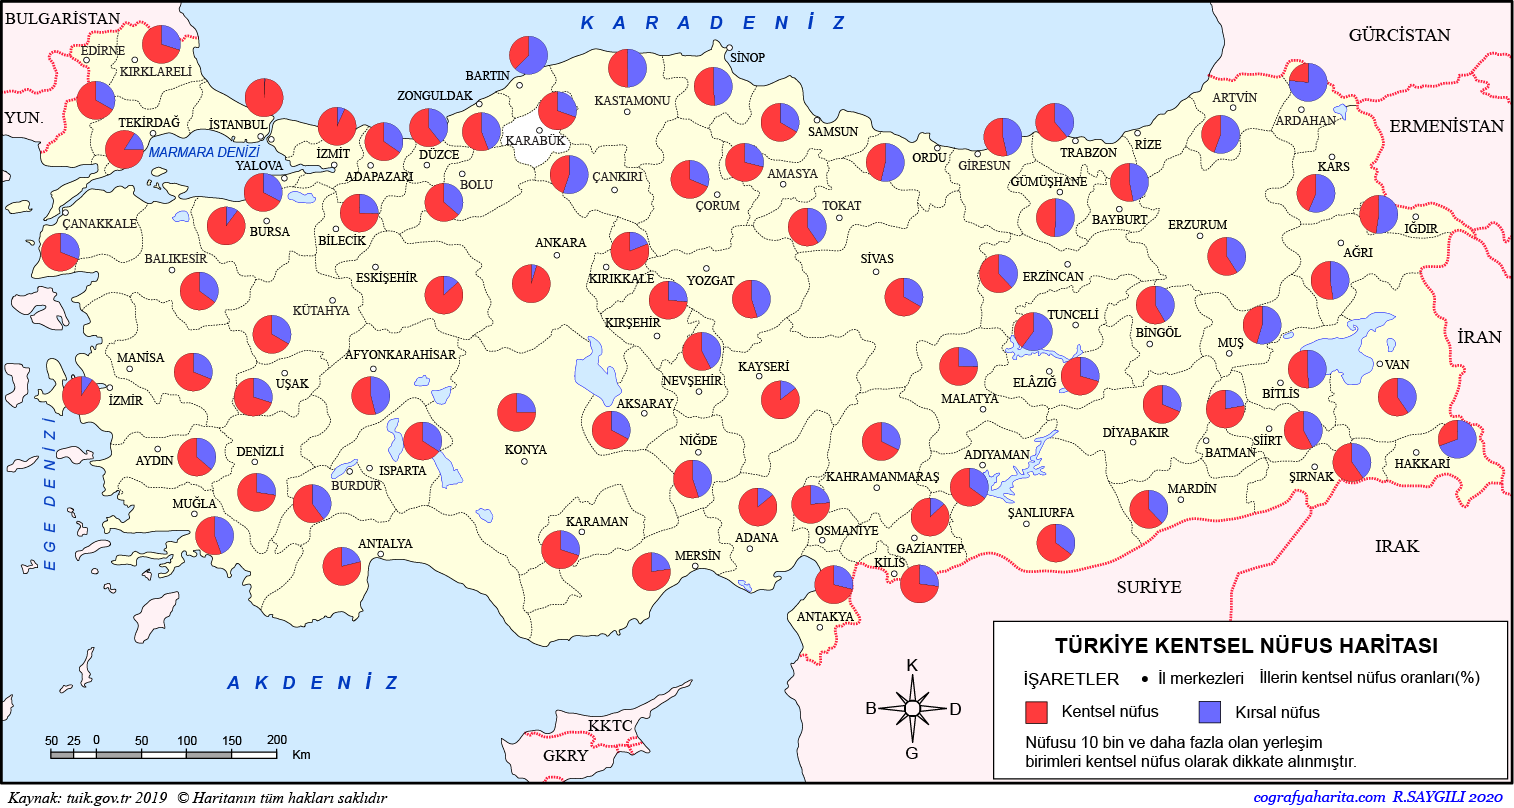 turkiye kentsel nufus haritasi kentsel nufus nedir illerin kentsel nufus yogunlugu oranlari